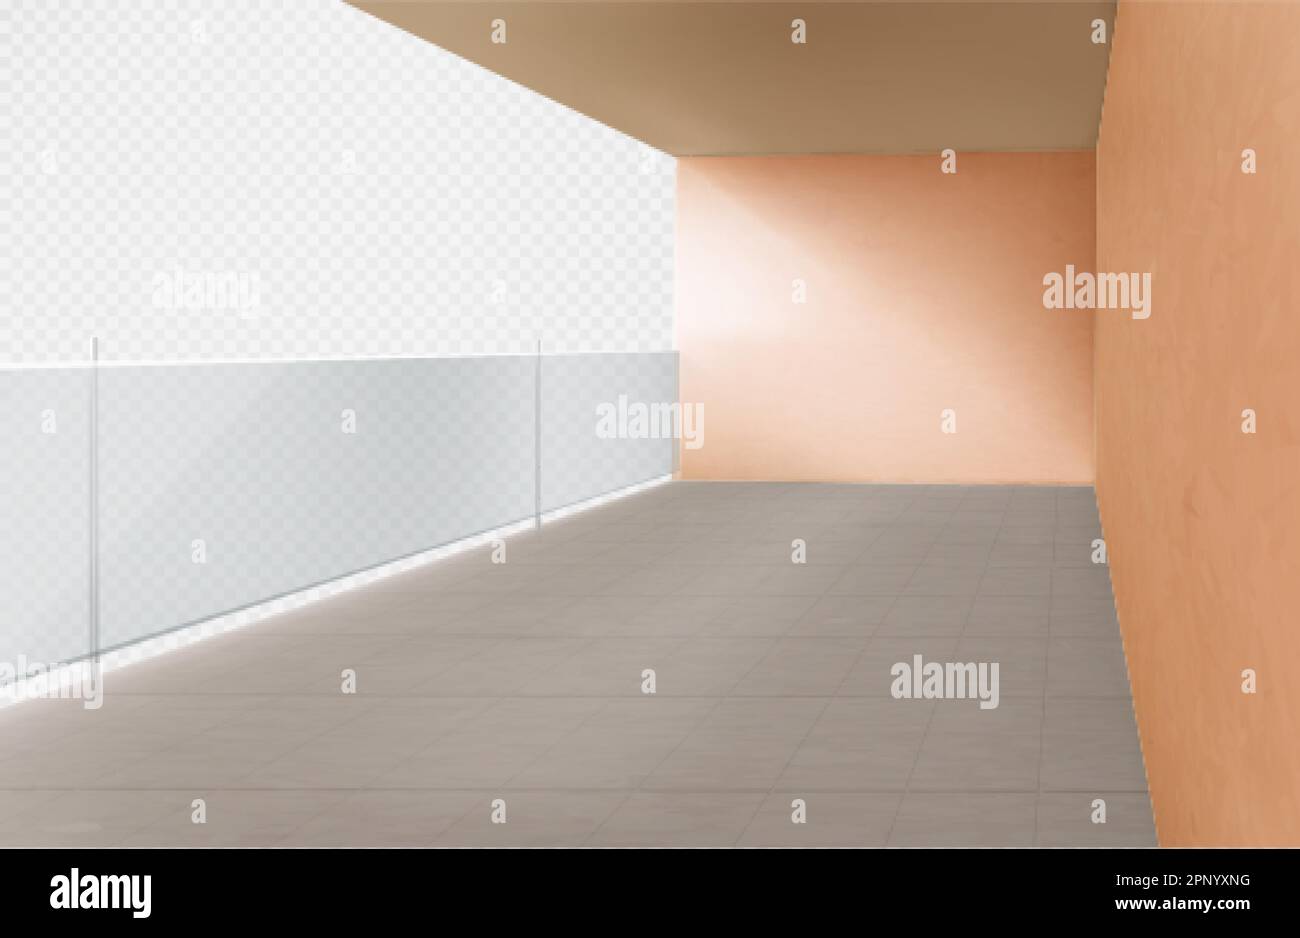 Balcone realistico con corrimano in vetro su sfondo trasparente. Illustrazione vettoriale di un terrazzo vuoto con pareti e pavimento piastrellato. urb moderna Illustrazione Vettoriale